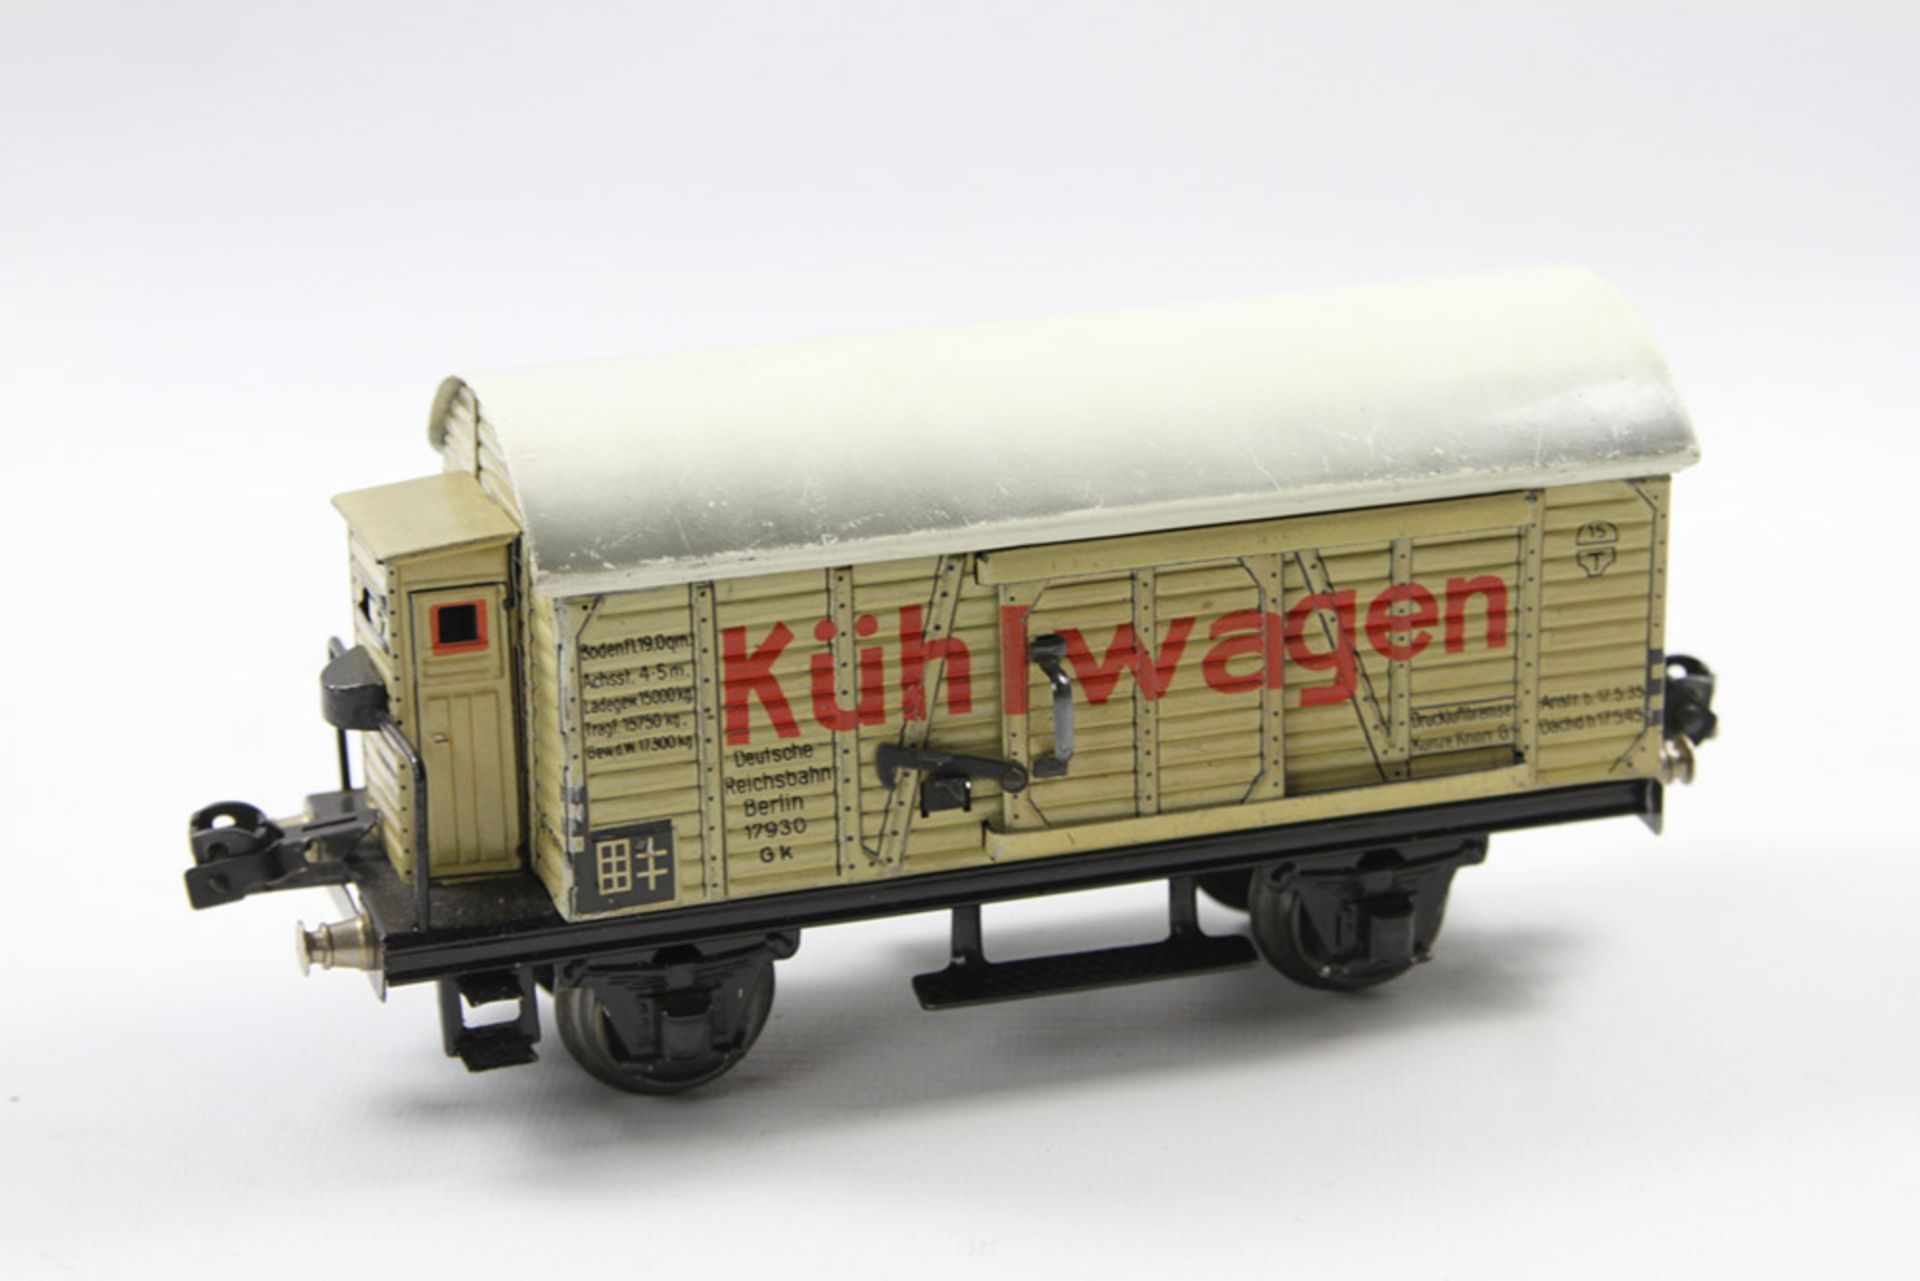 MÄRKLIN Kühlwagen, Nr. 17930, Spur 0, Blech, grau/weiß lithographiert, 2-achsig. Mit Schiebetüren,